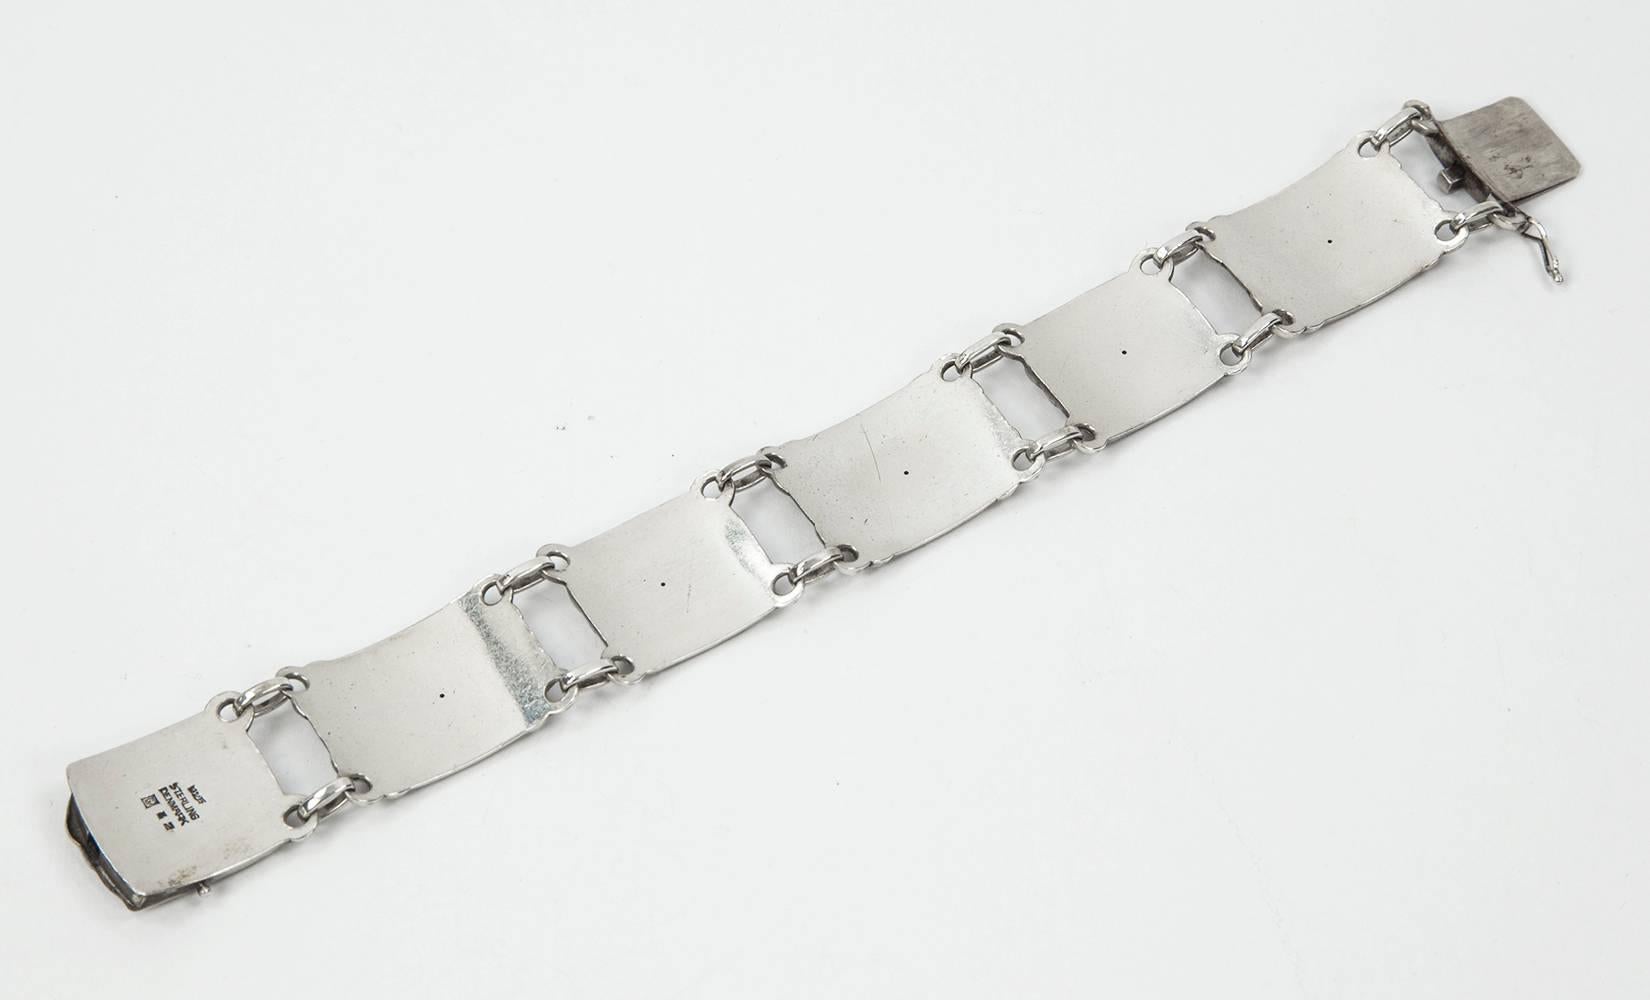 Outstanding Swan Sterling Silver Panel Bracelet #42 by famed Silversmith...Georg Jensen bracelet measures approx. 7.5